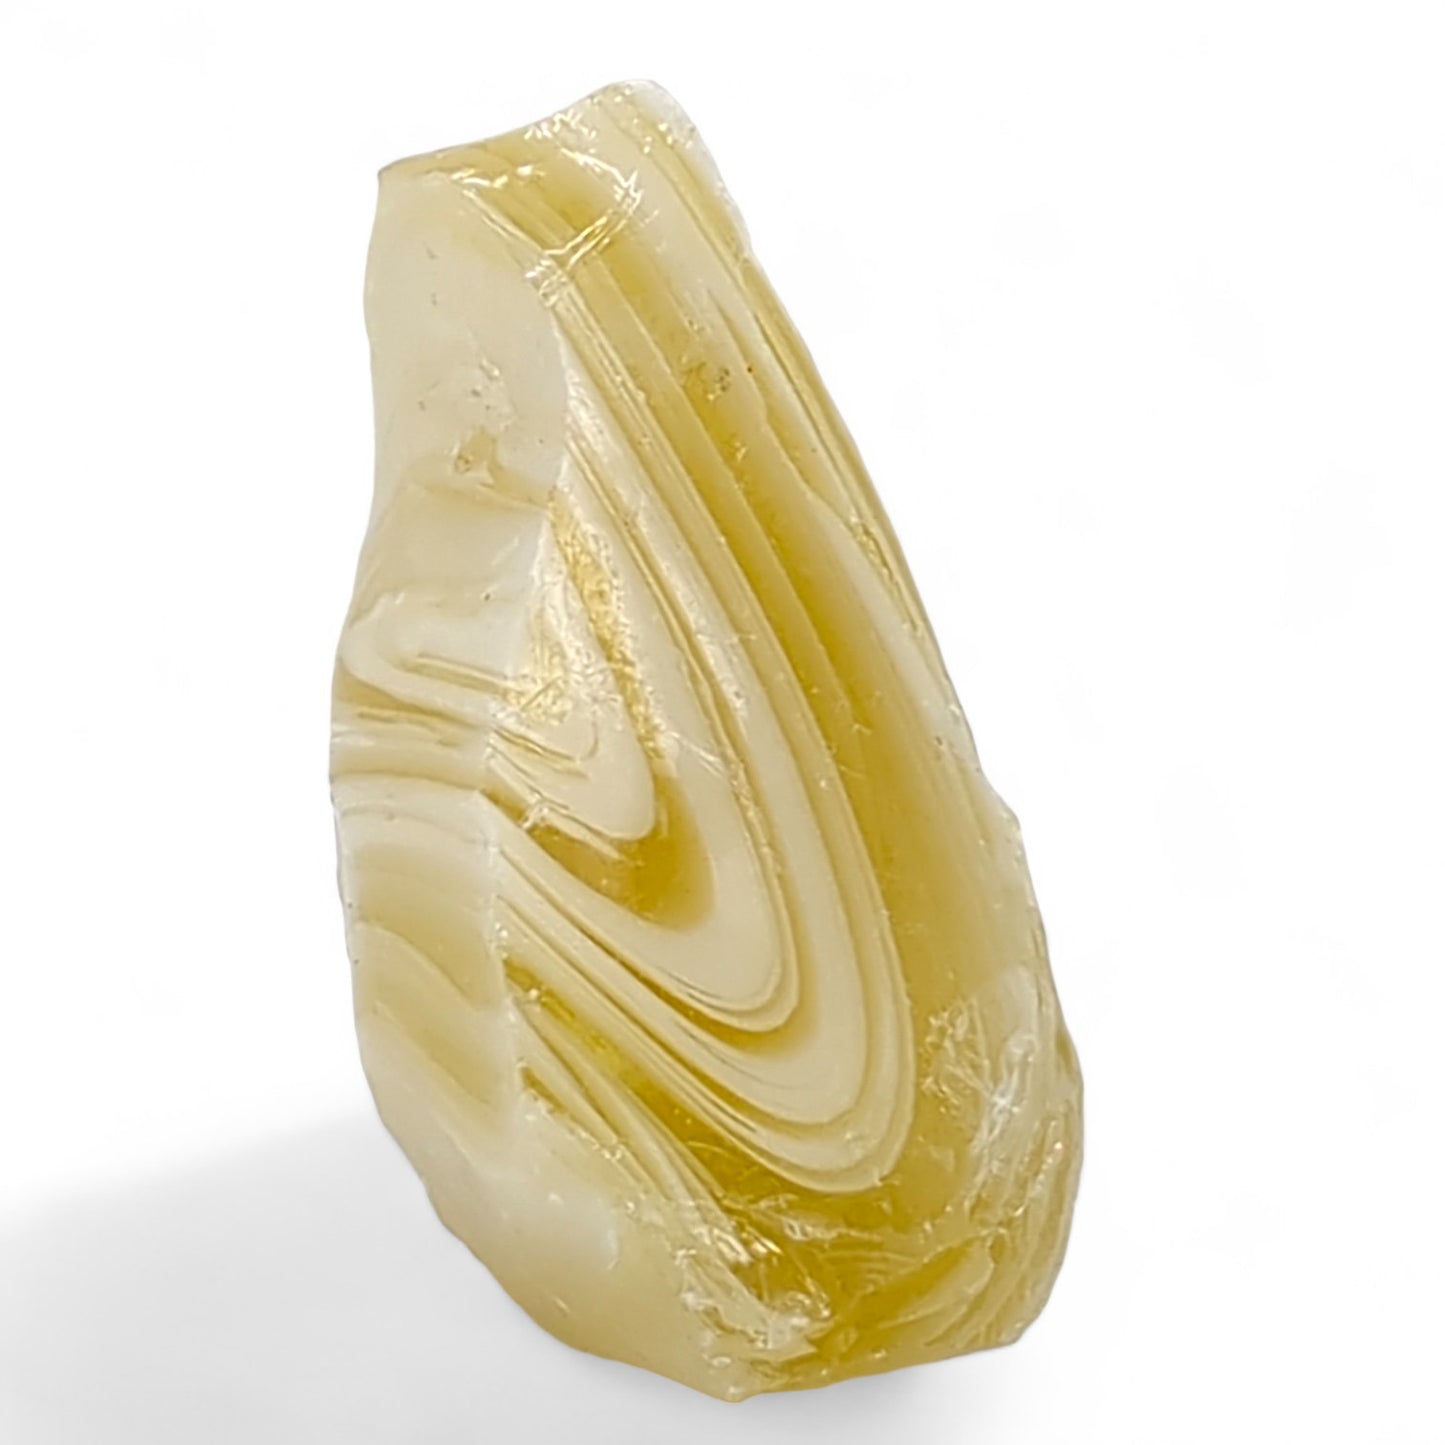 Lemon and Milk Glass Art Glass Cullet Swirl Slag Glass #4L37